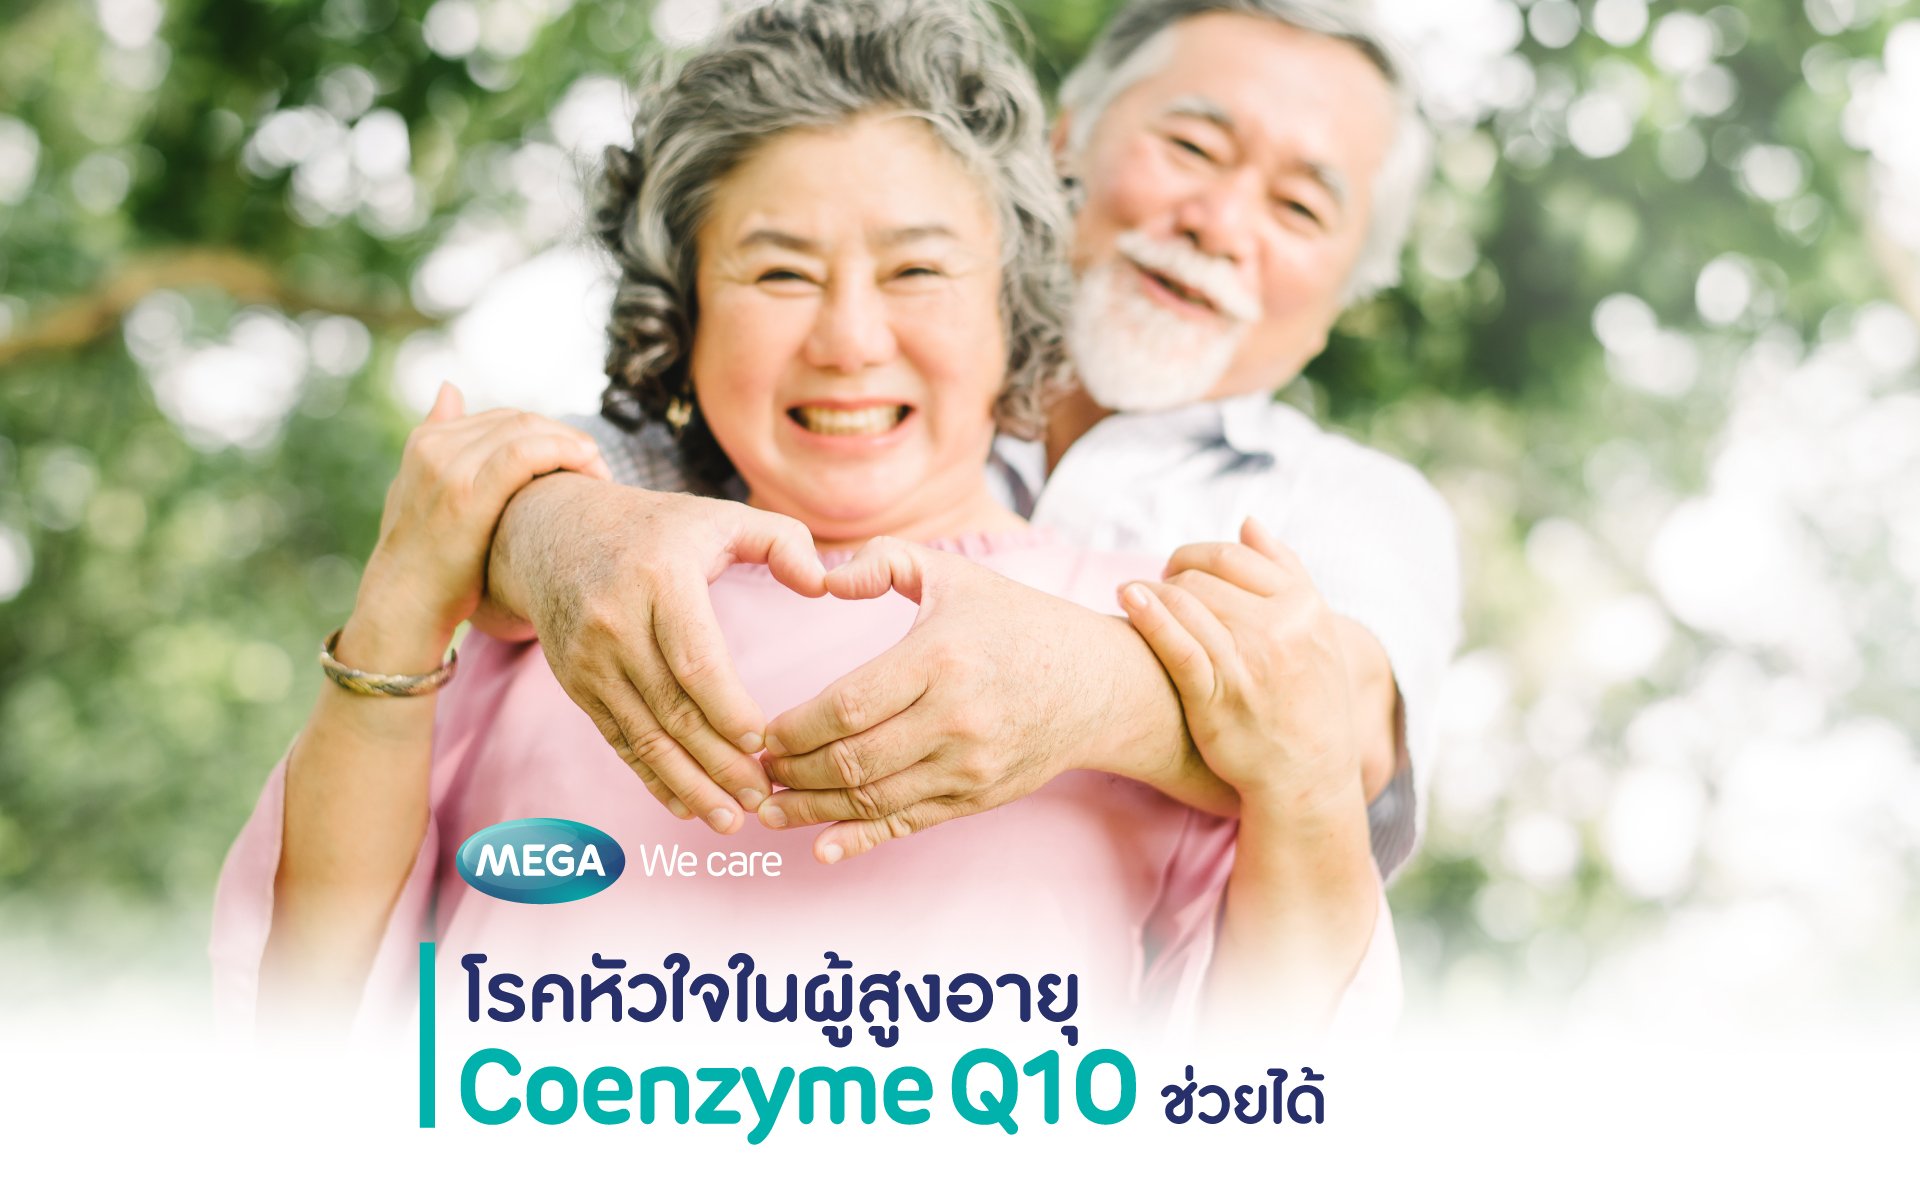 โรคหัวใจในผู้สูงอายุ Coenzyme Q10 ช่วยได้